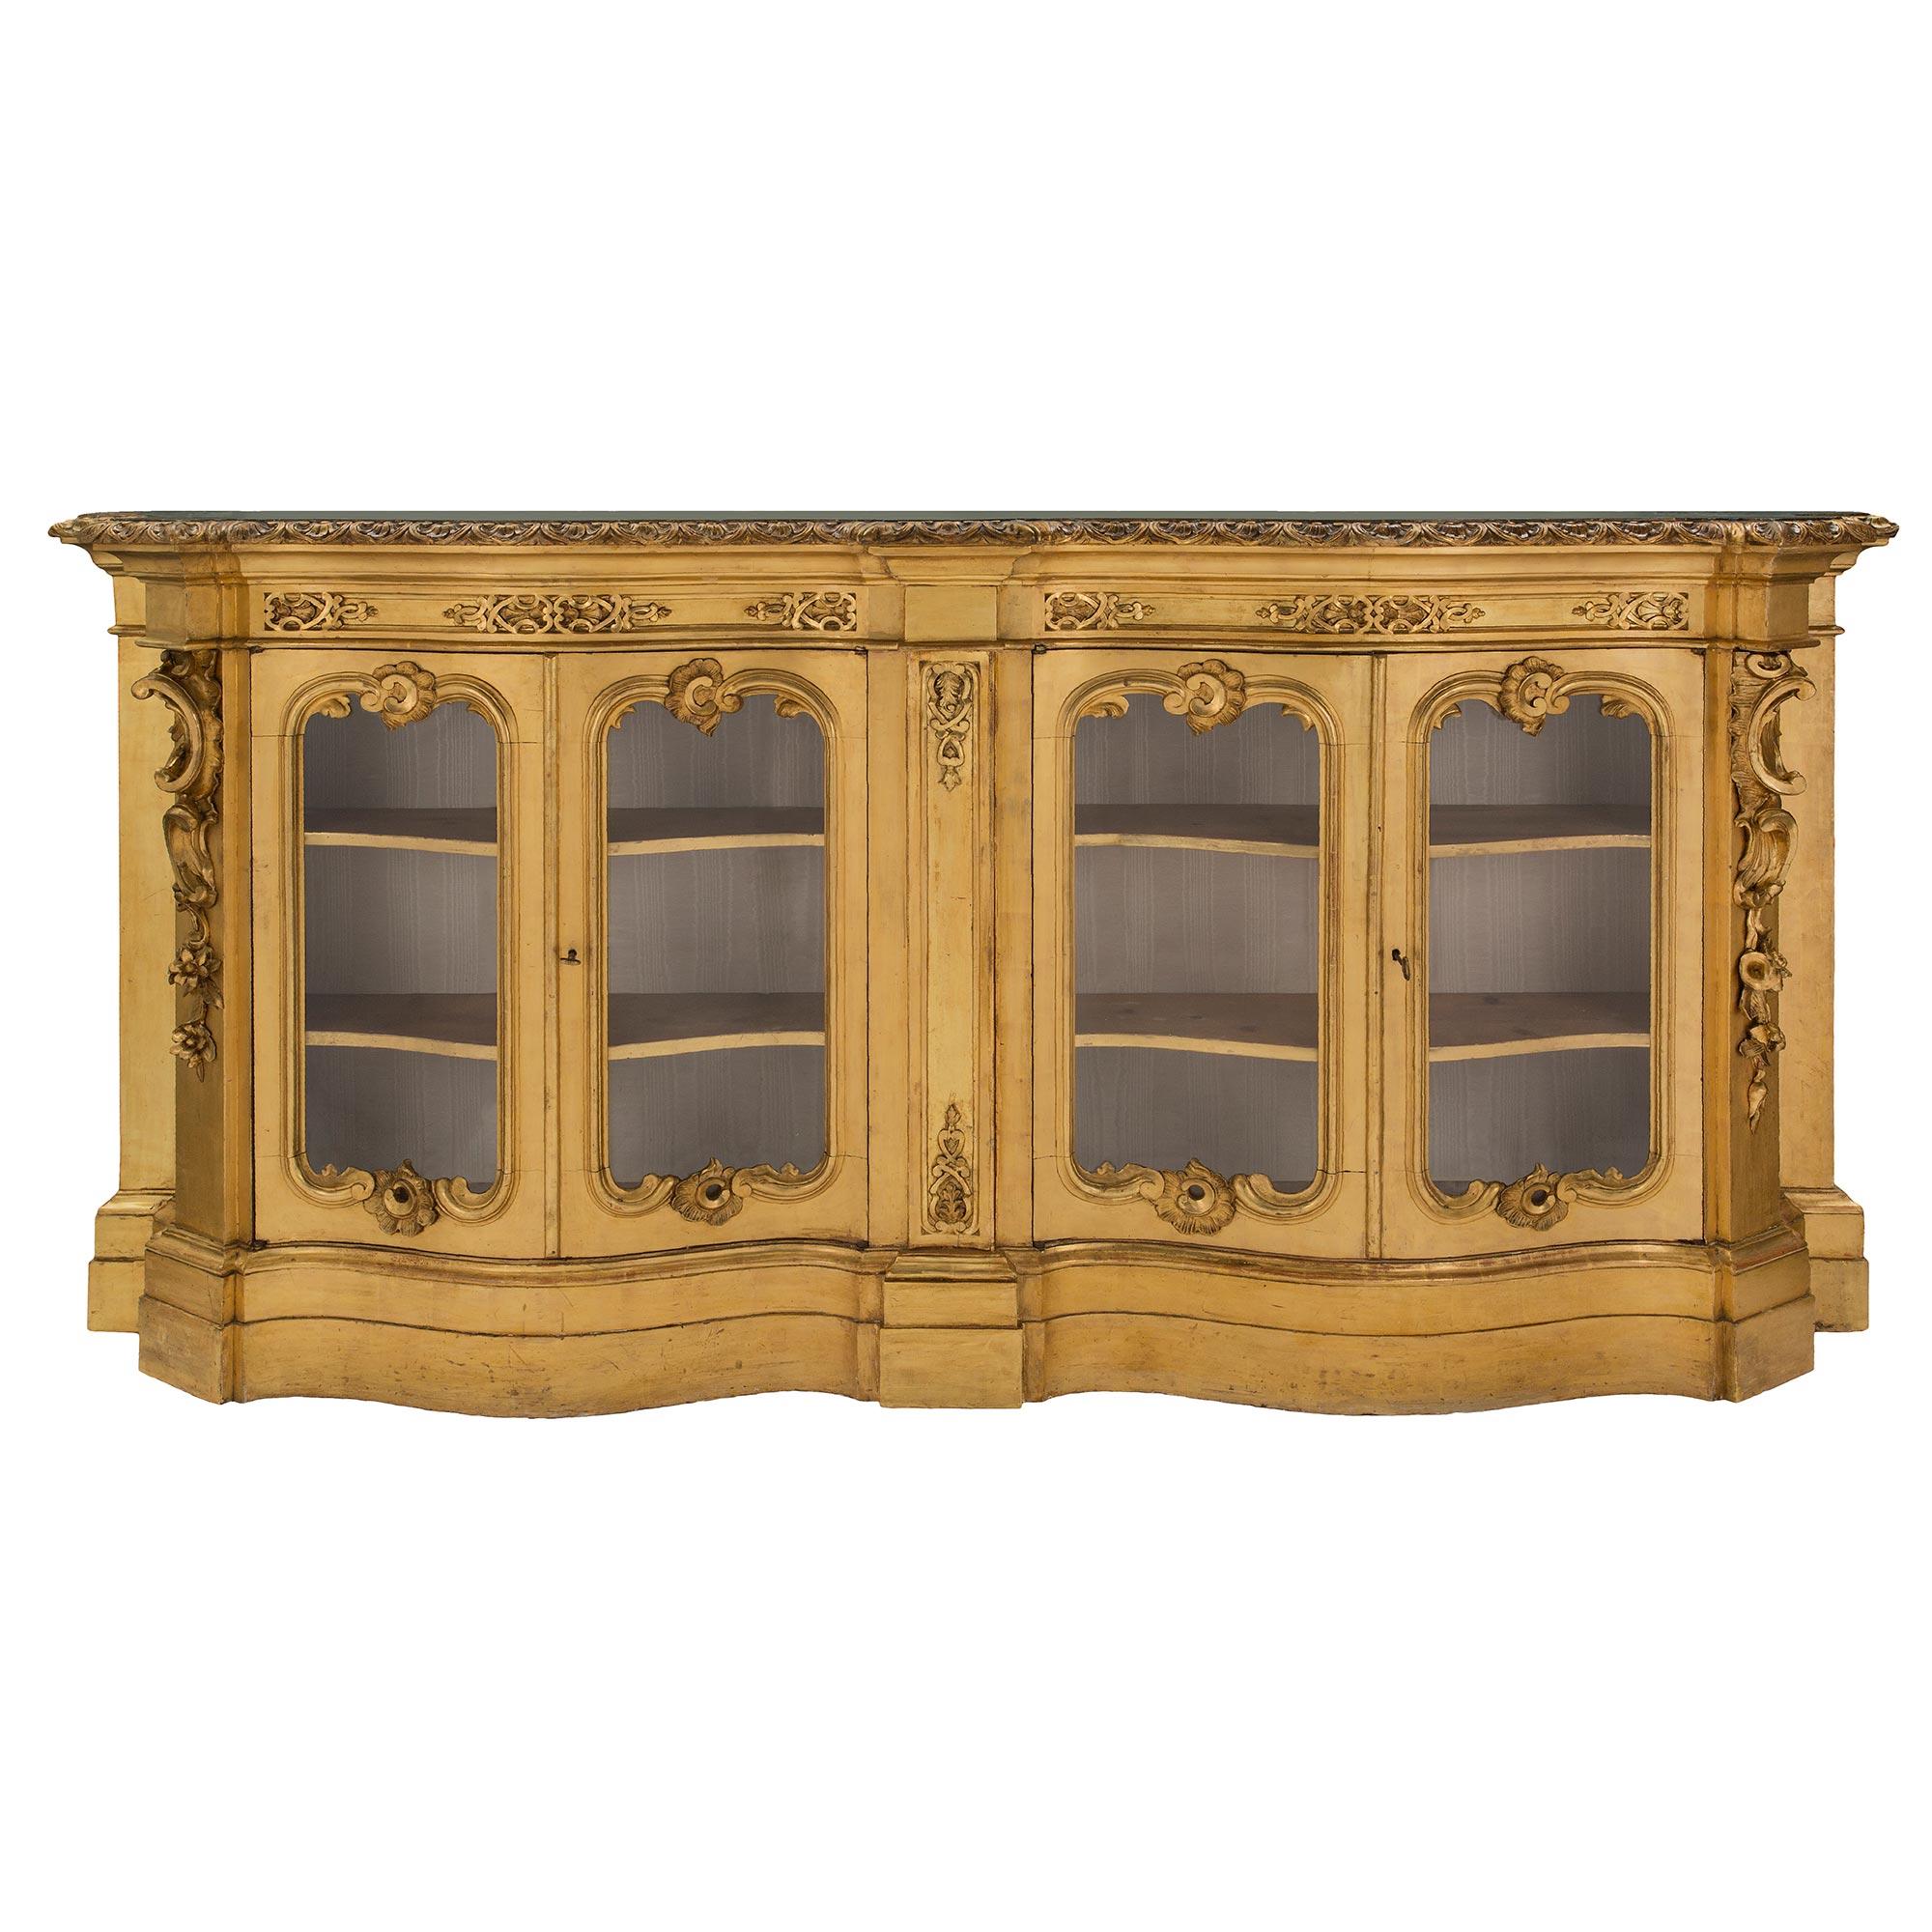 Une paire de vitrines en bois doré de style vénitien du 19ème siècle, à la fois étonnantes et de grande taille. Les vitrines les plus impressionnantes, d'une profondeur unique, sont chacune surélevée par une base bombée et festonnée au motif